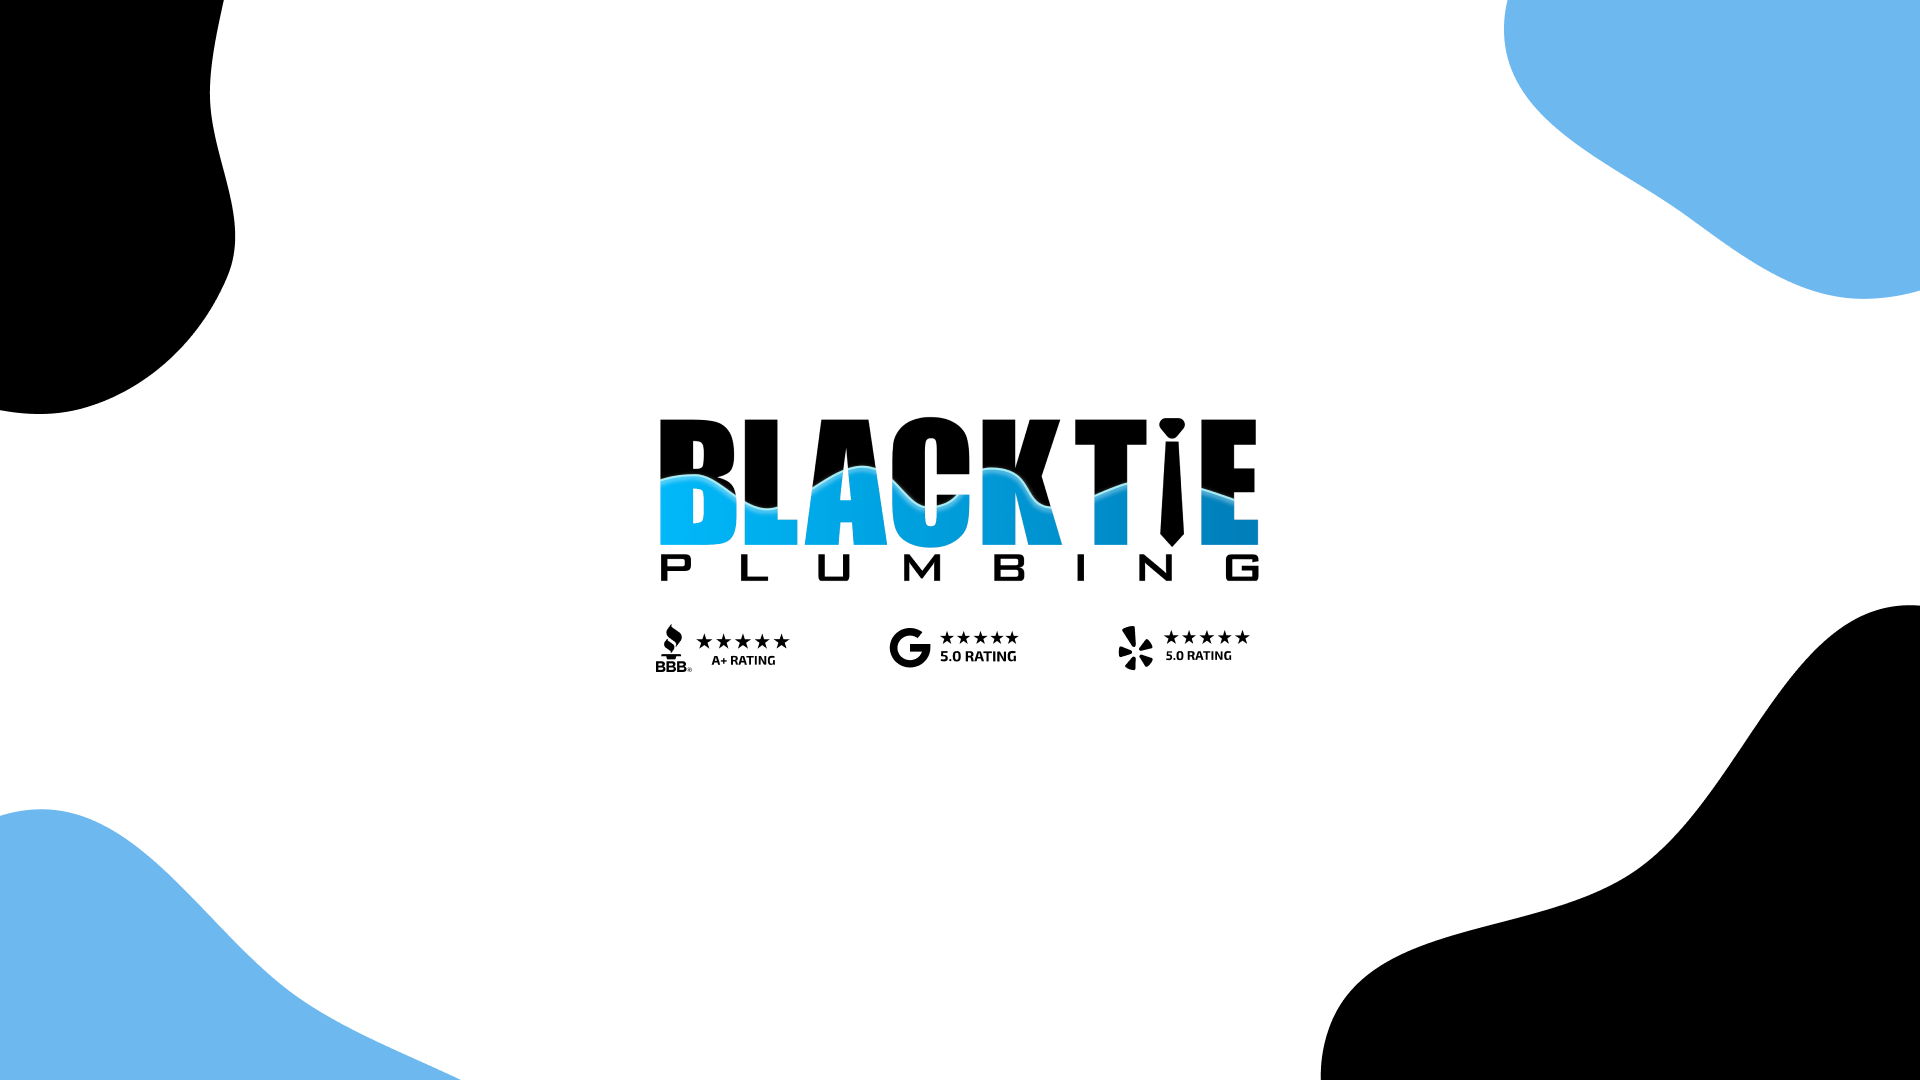 (c) Blacktieplumbing.com